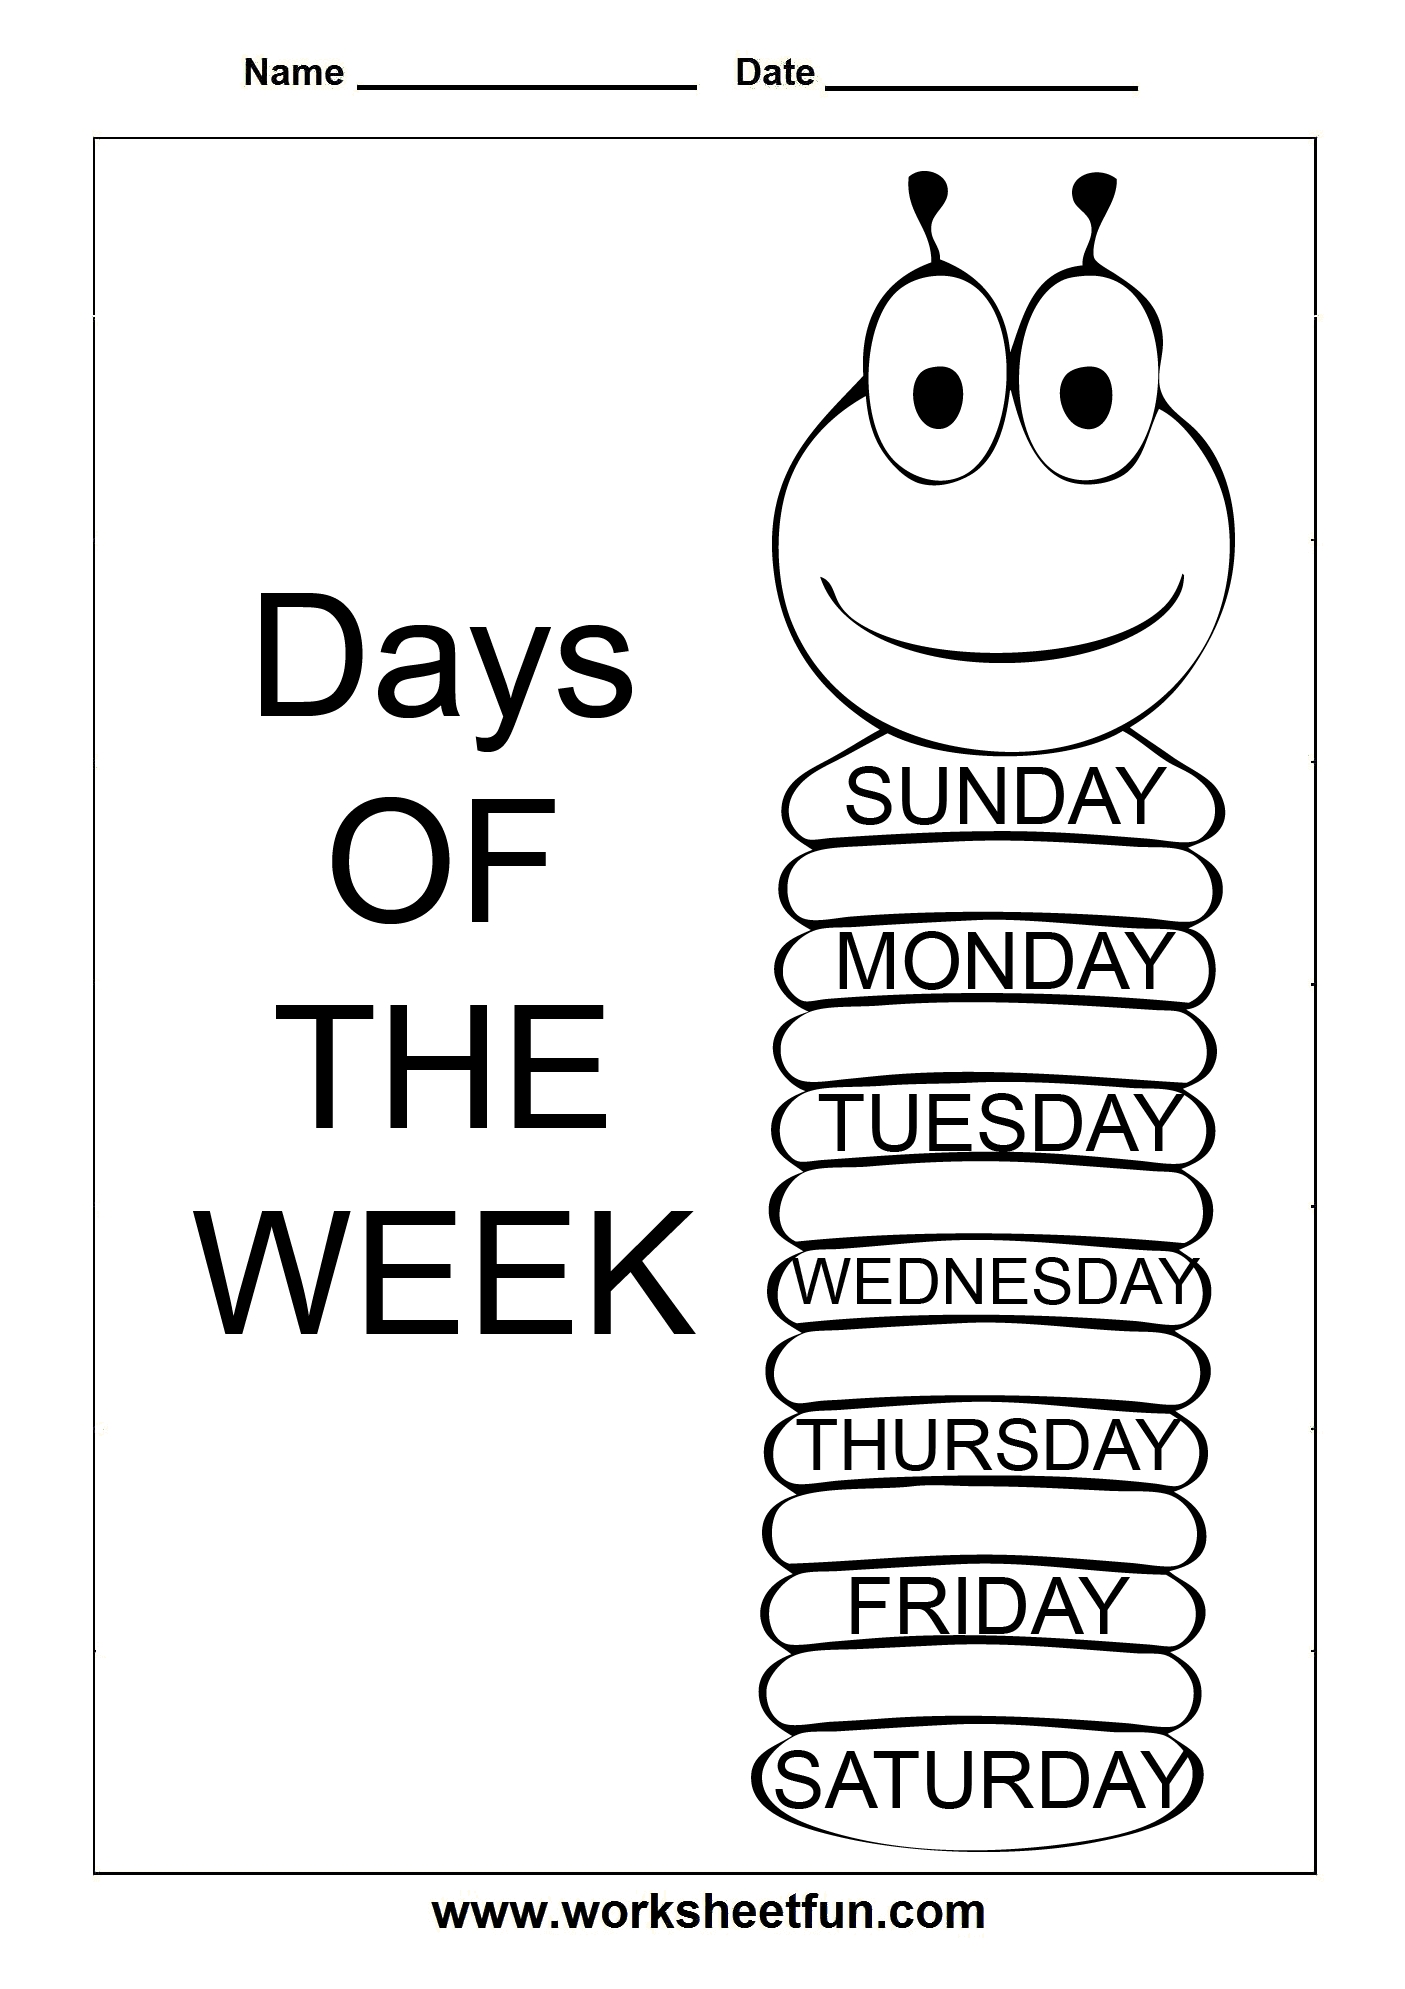 Days Of The Week - 3 Worksheets / Free Printable